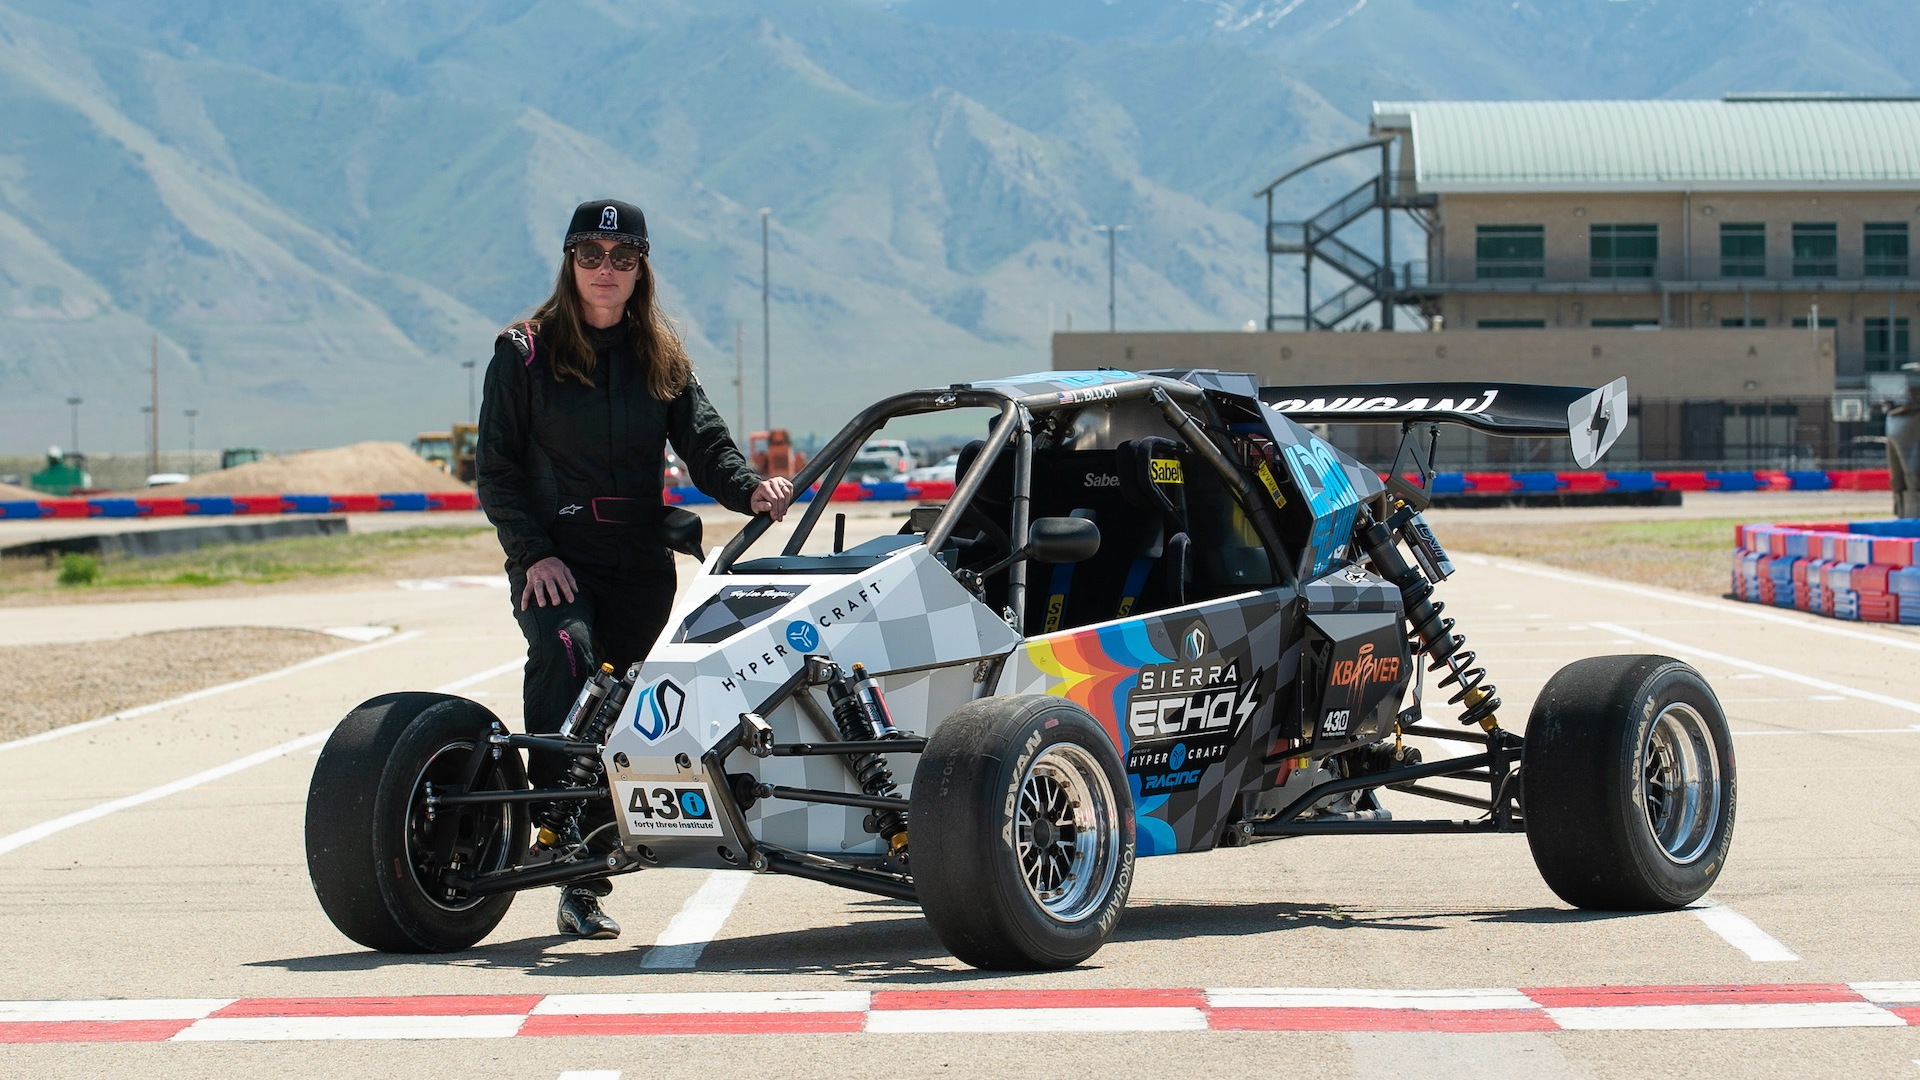 Lucy Block to race at Pikes Peak in Sierra Echo EV